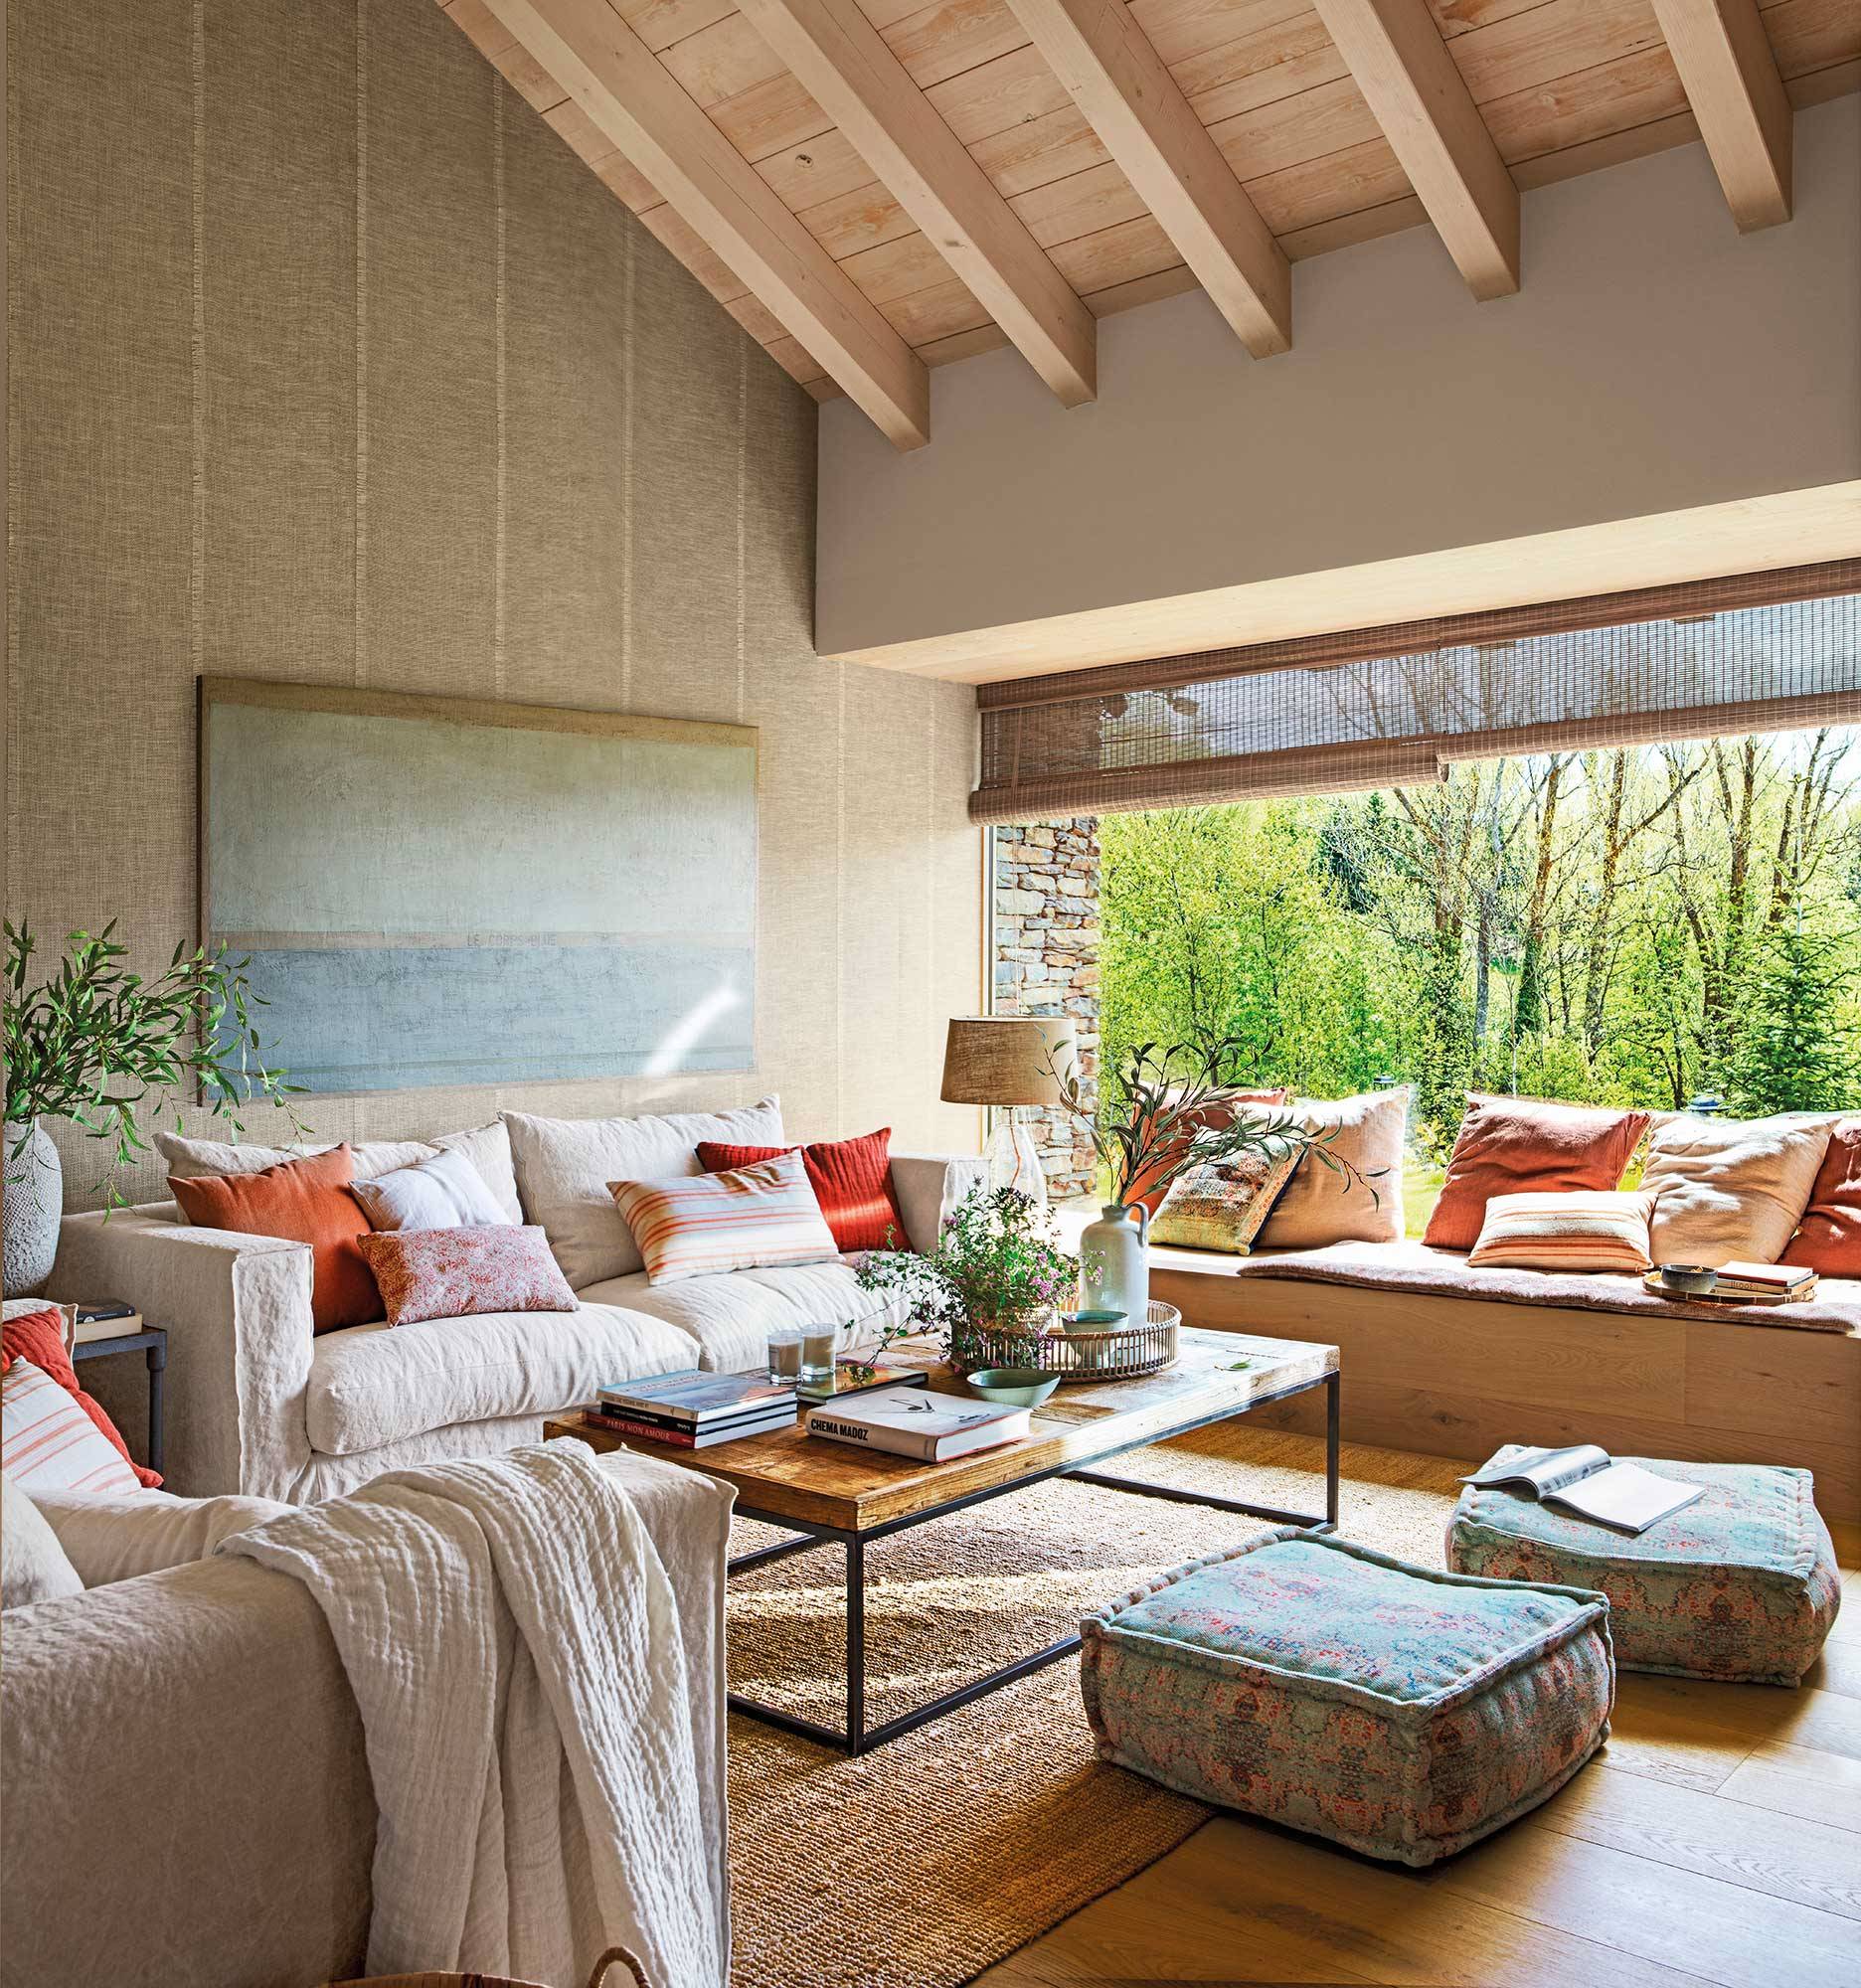 Salón rústico con grandes ventanales, alfombra de fibras y techo abuhardillado con vigas de madera.